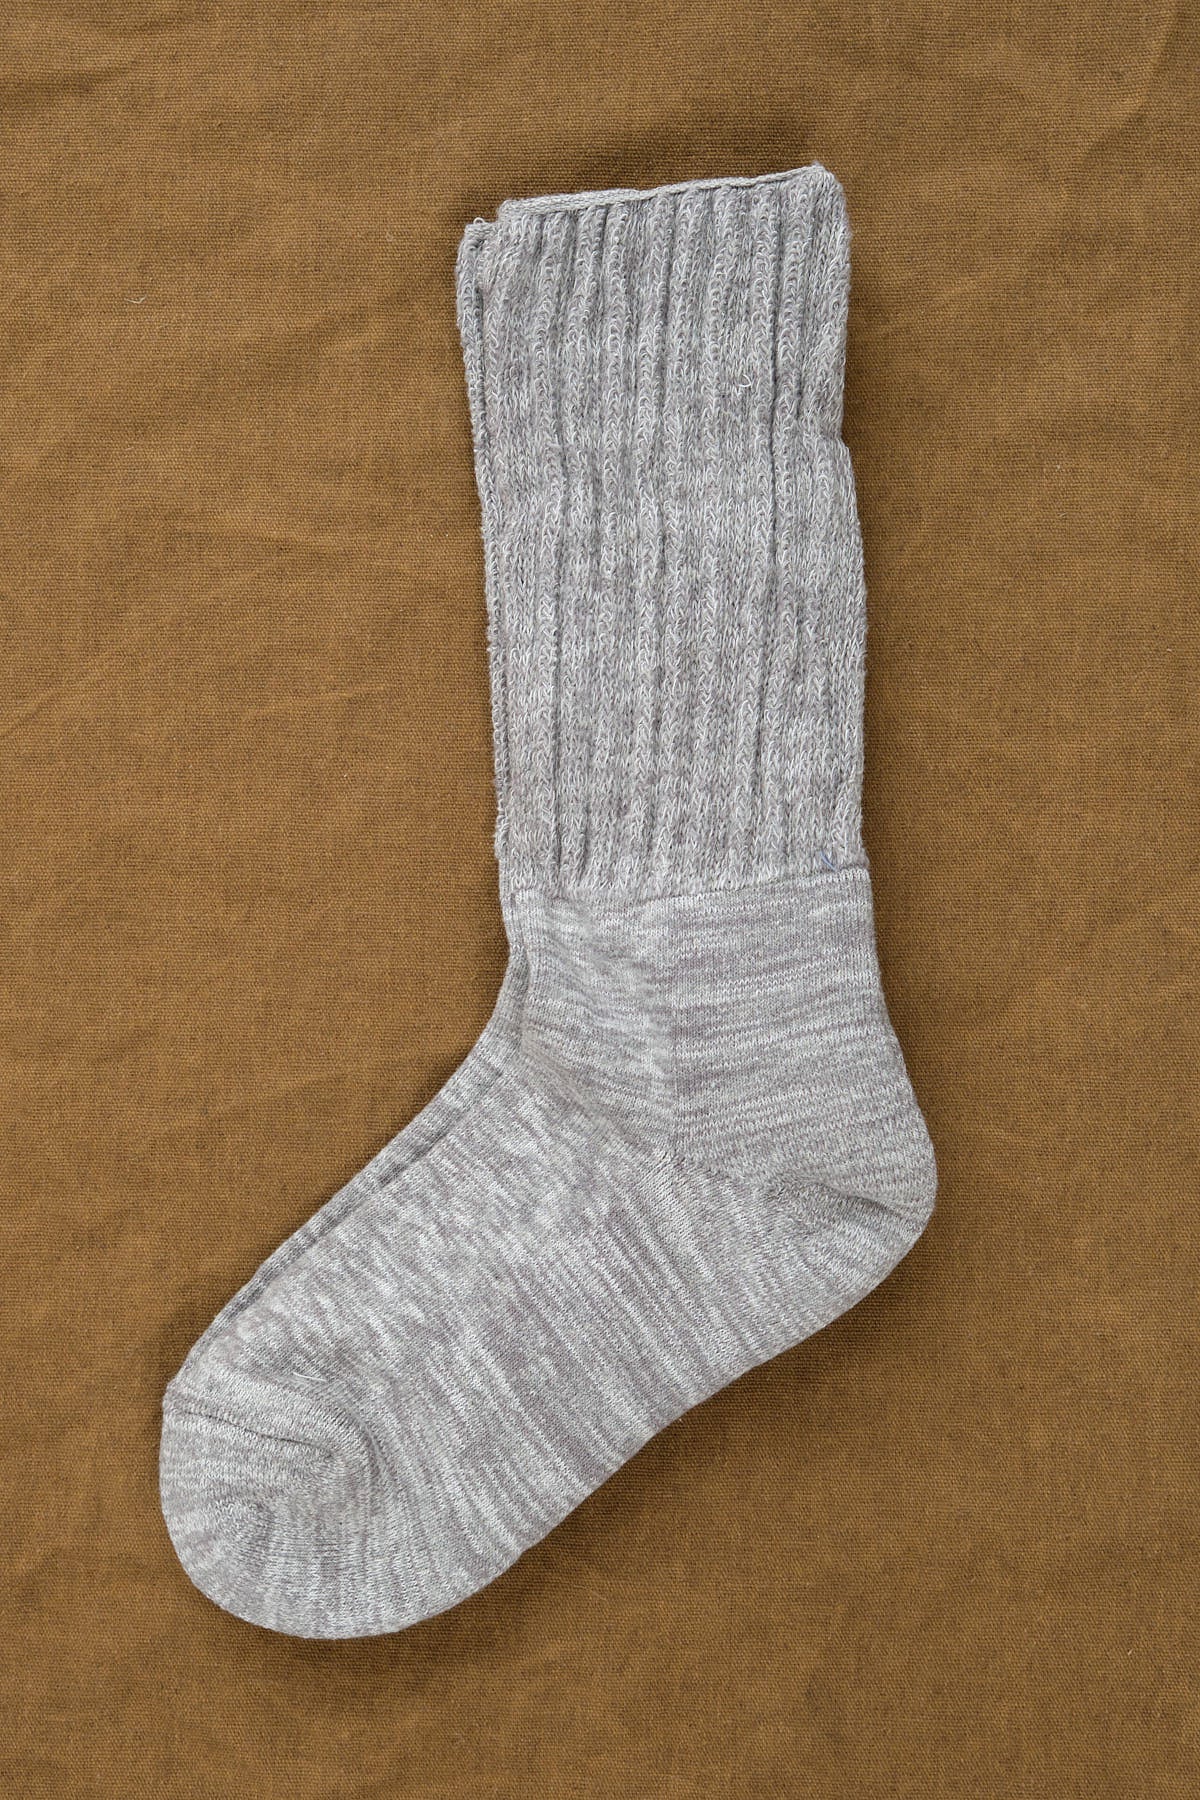 Kontex Mekke Socks in Heather Grey